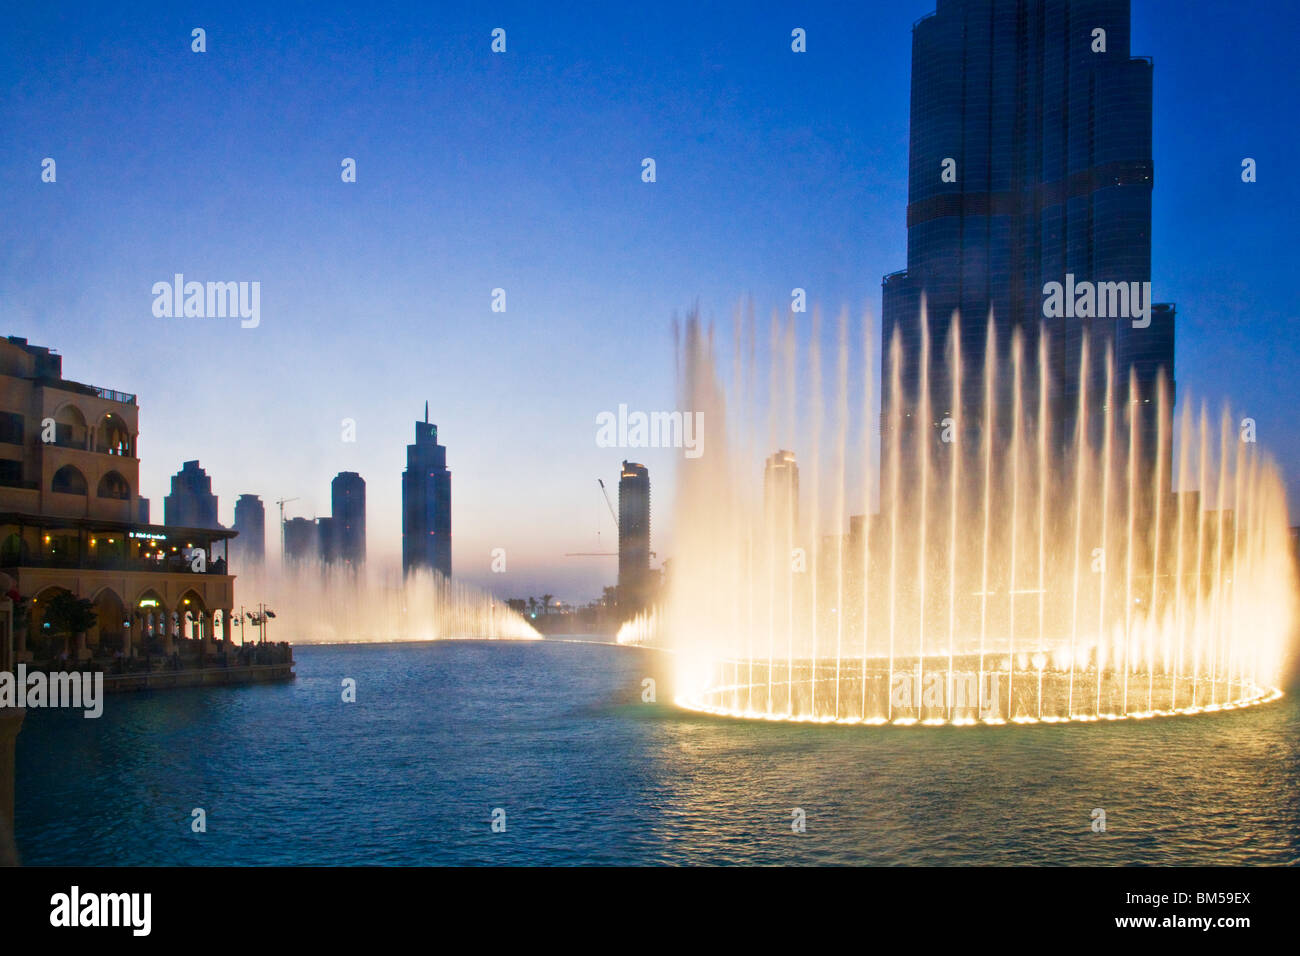 El Dubai Fountain mostrar delante del Burj Dubai o Khalifa, el edificio más alto del mundo, en el centro de Dubai, EAU Foto de stock